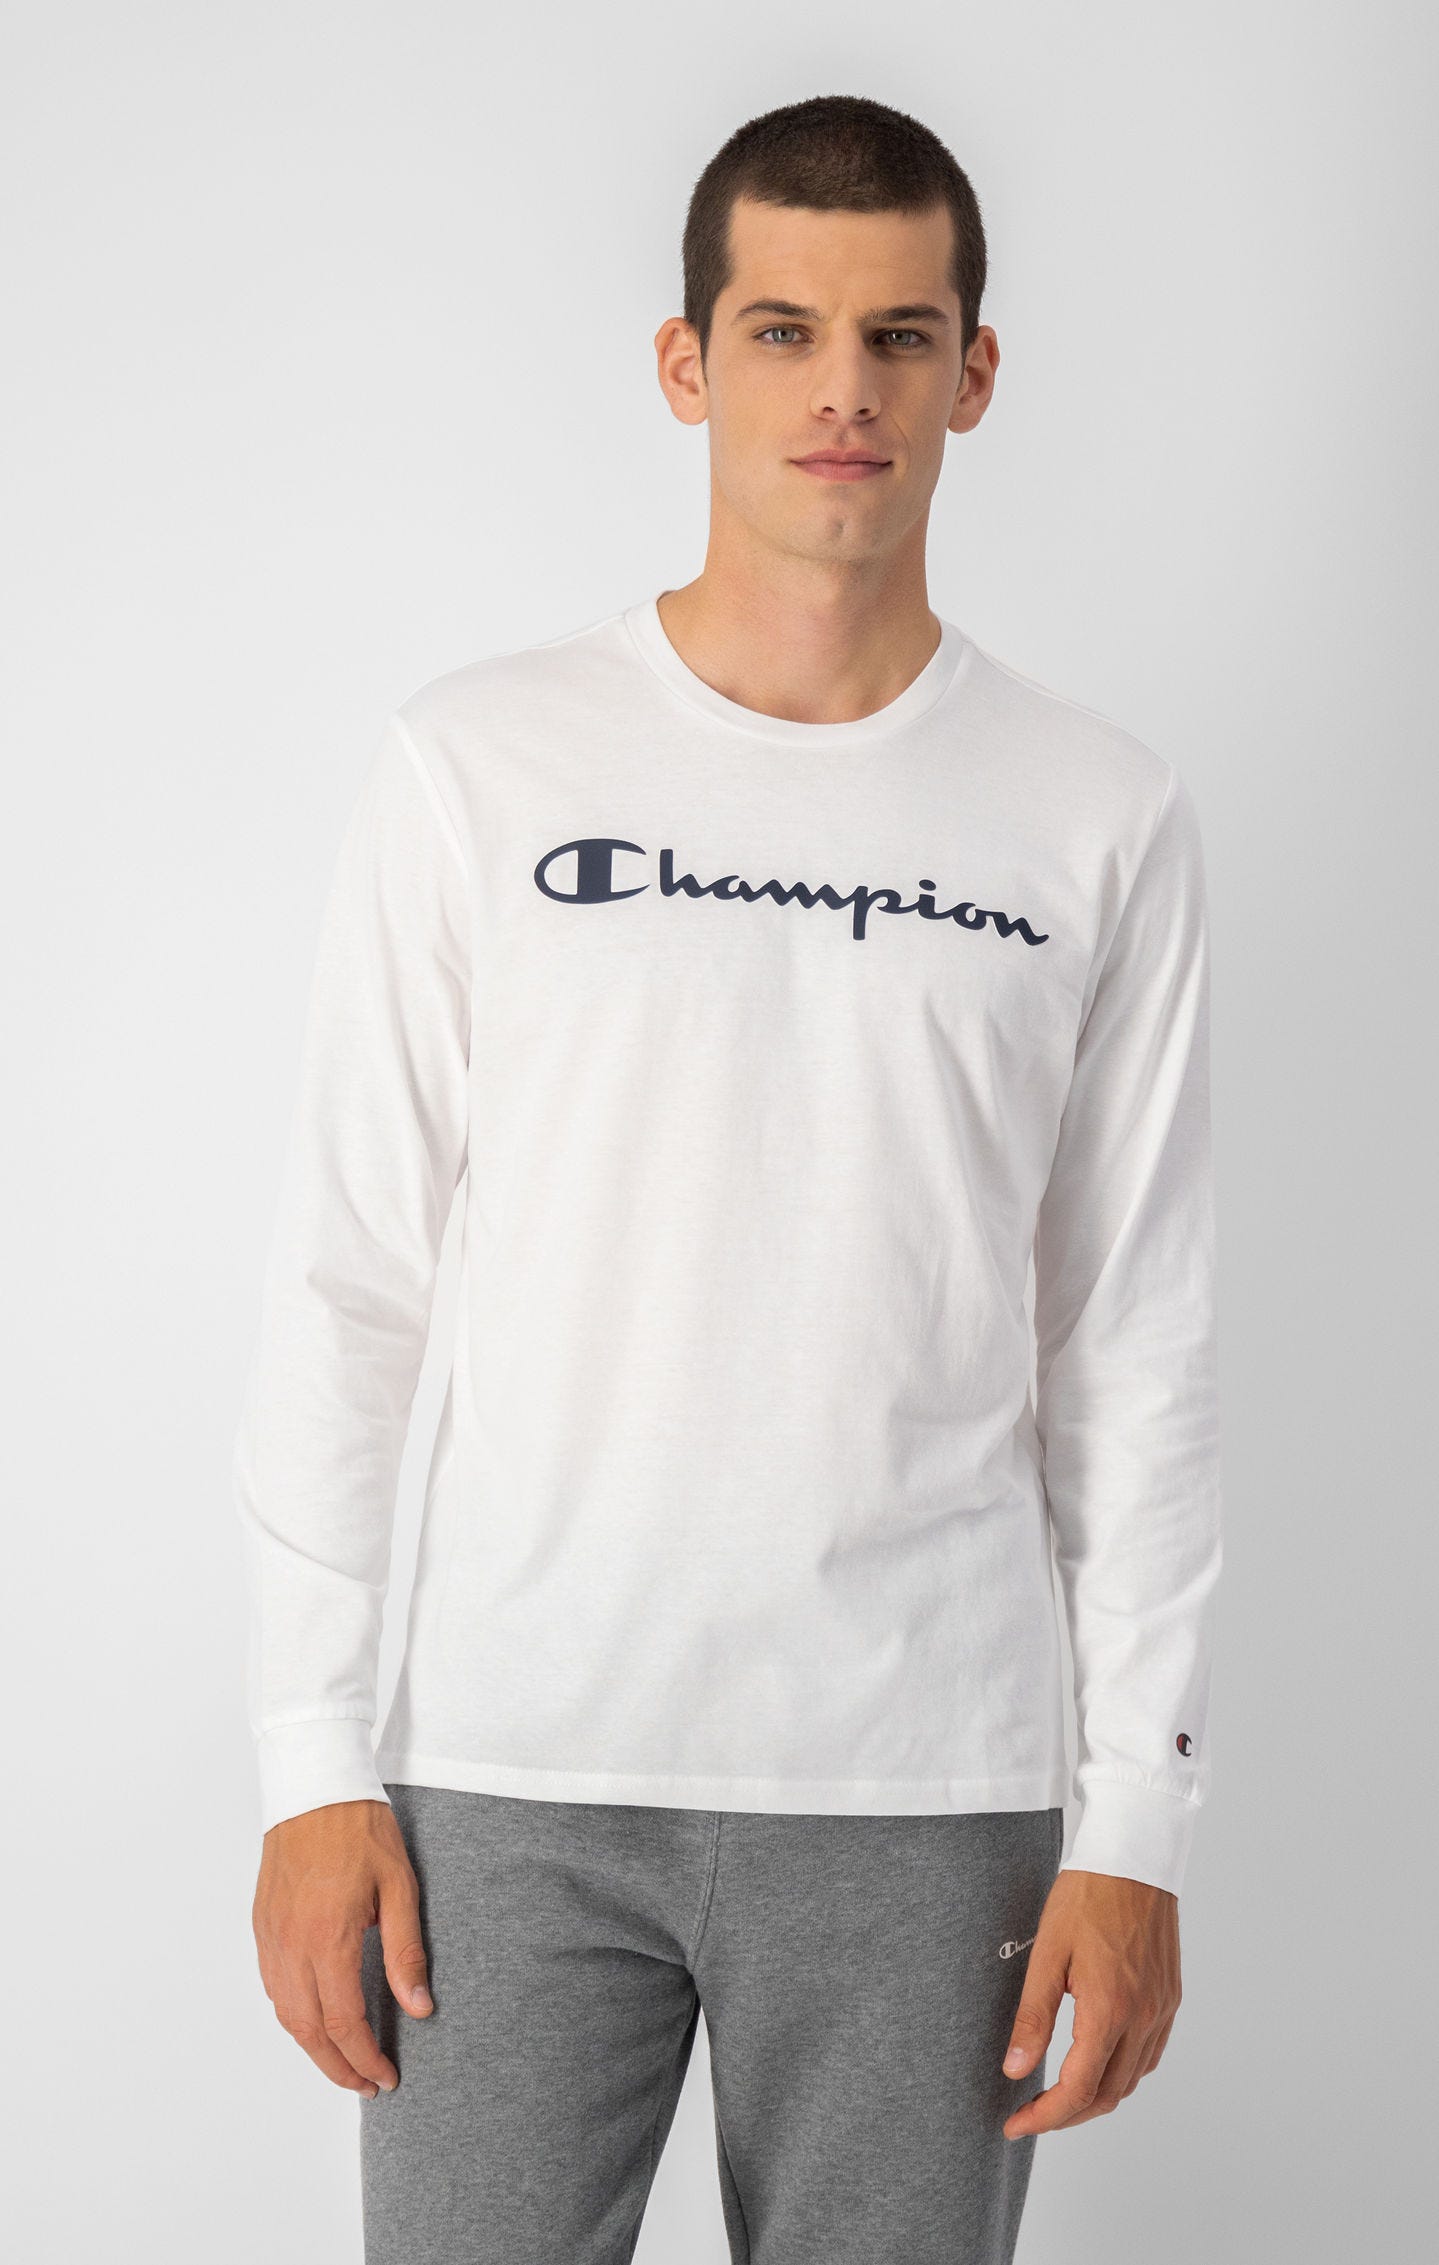 T-shirt à manches longues et logo Champion imprimé